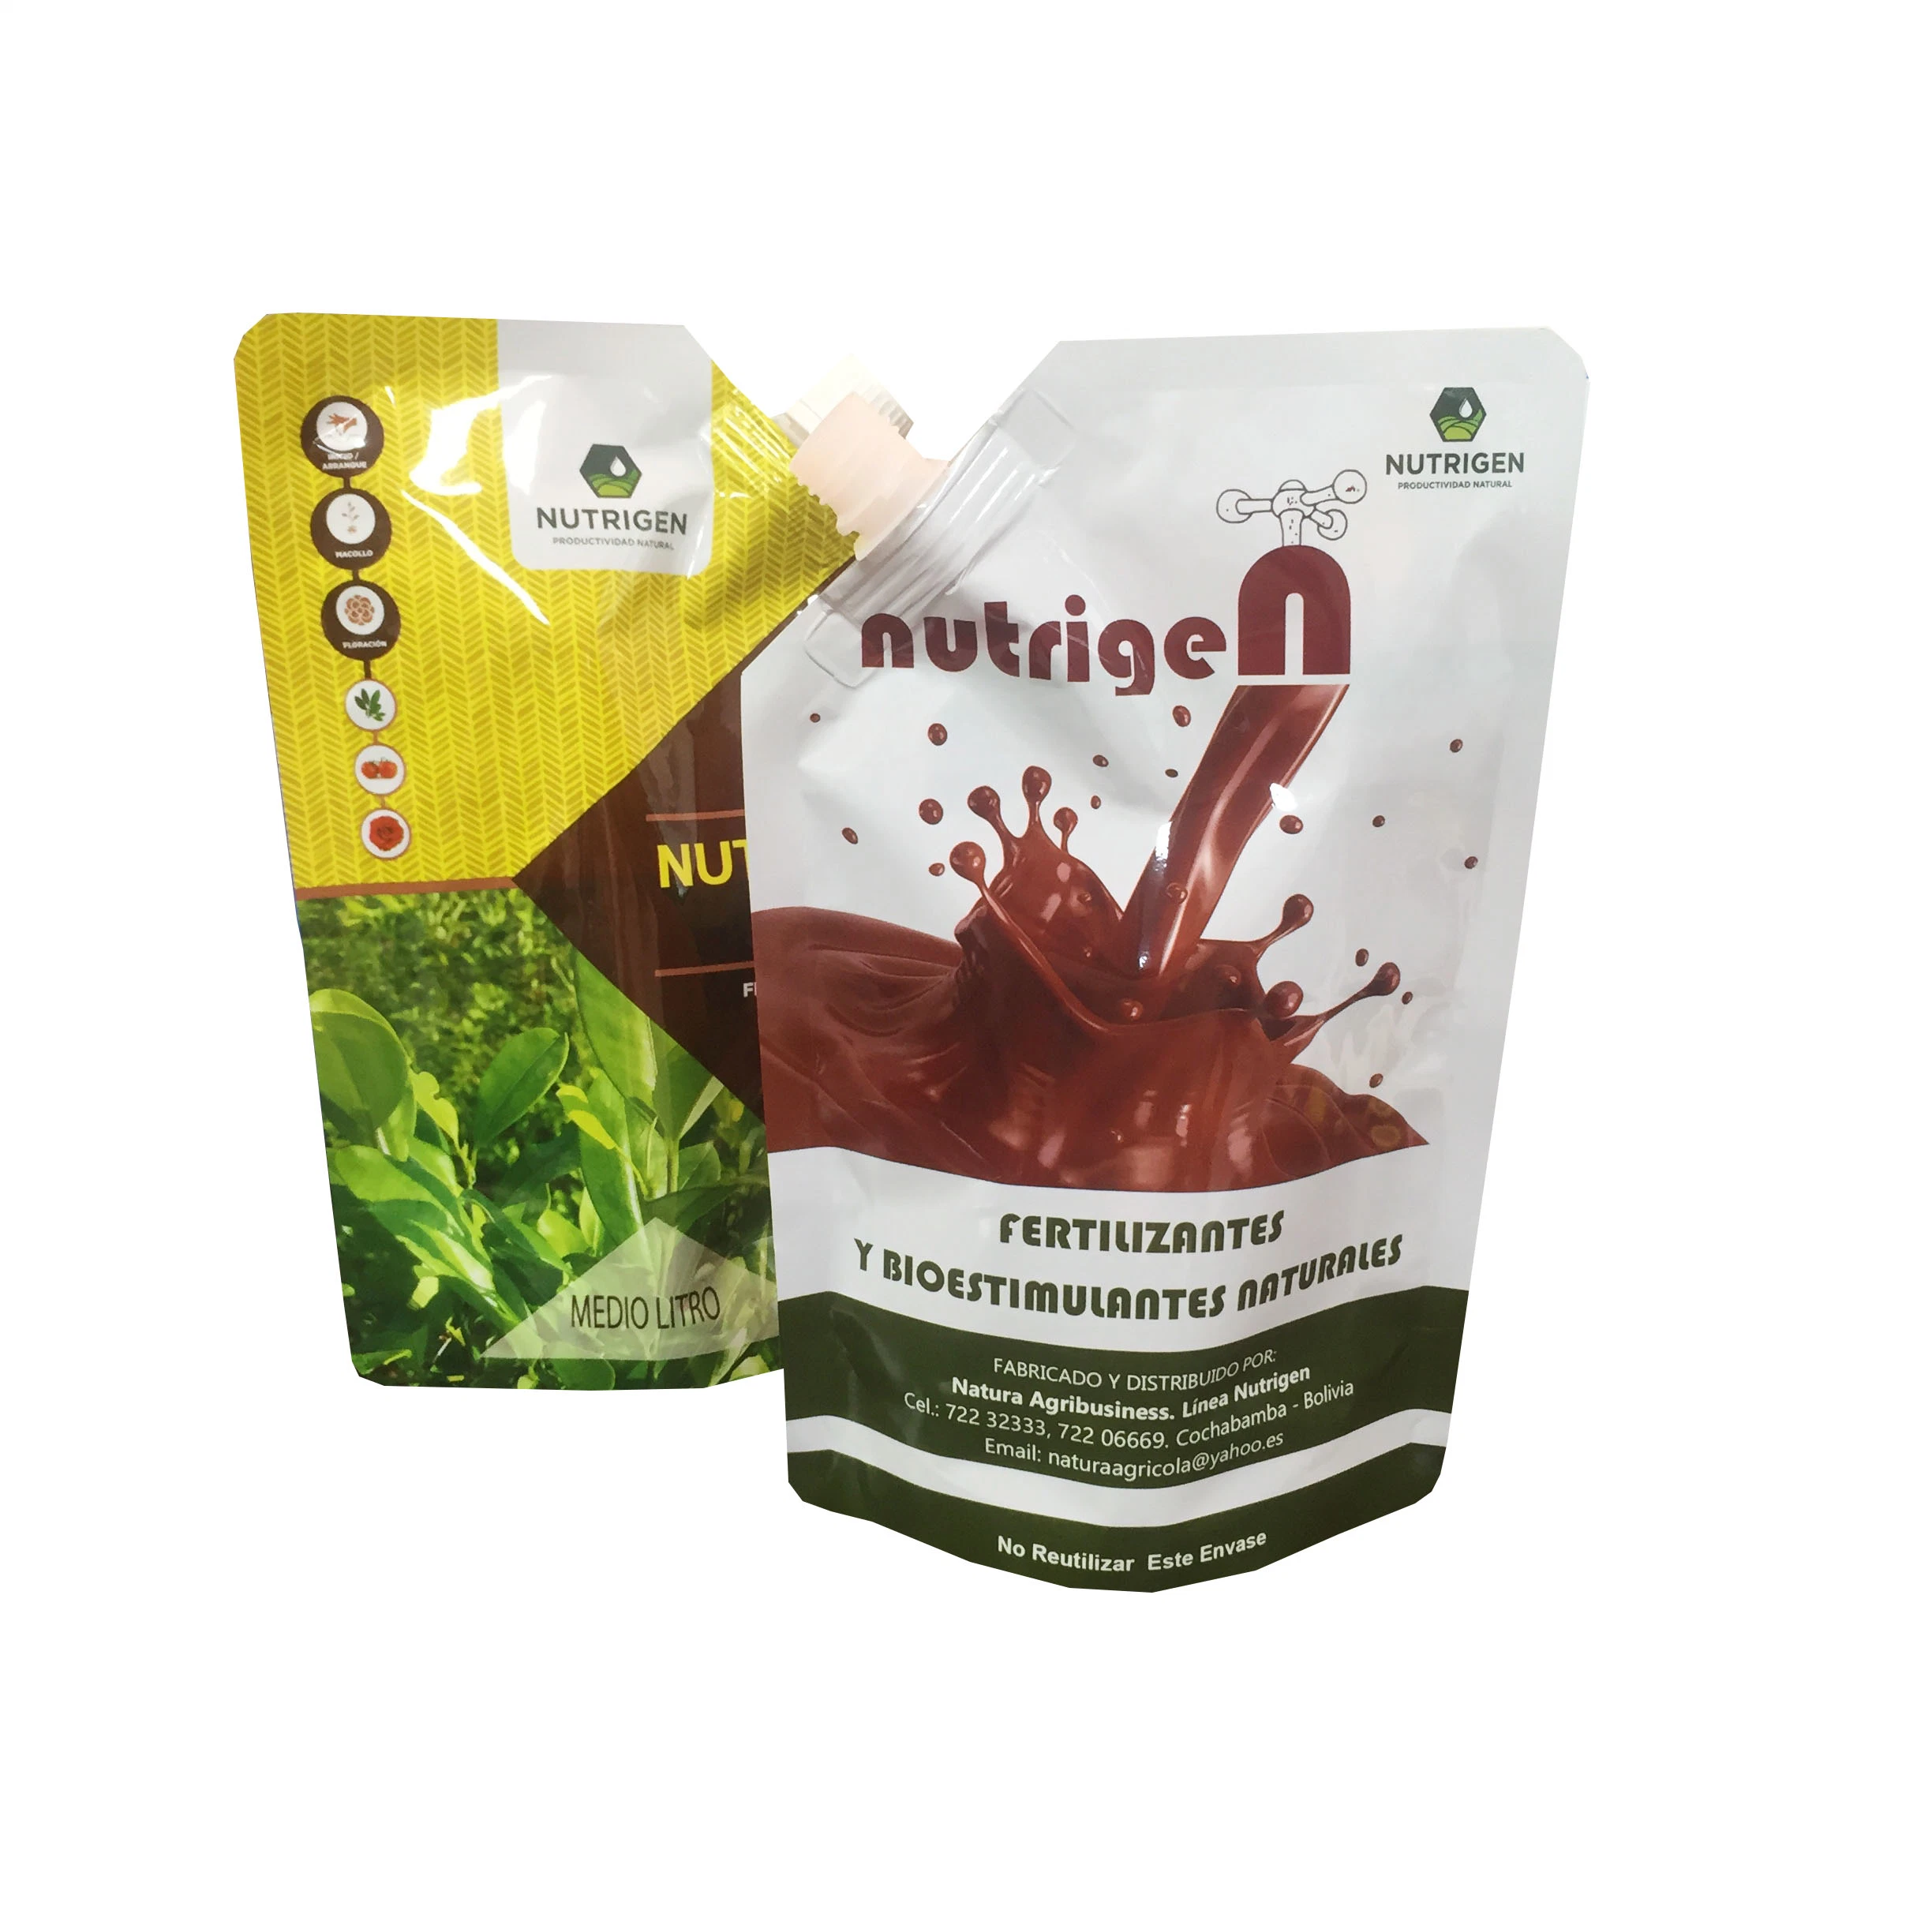 Fertilizer Liquid Juice Detergent Powder Plastic Ice Popsicle Food Packaging Bags Spout Pouch